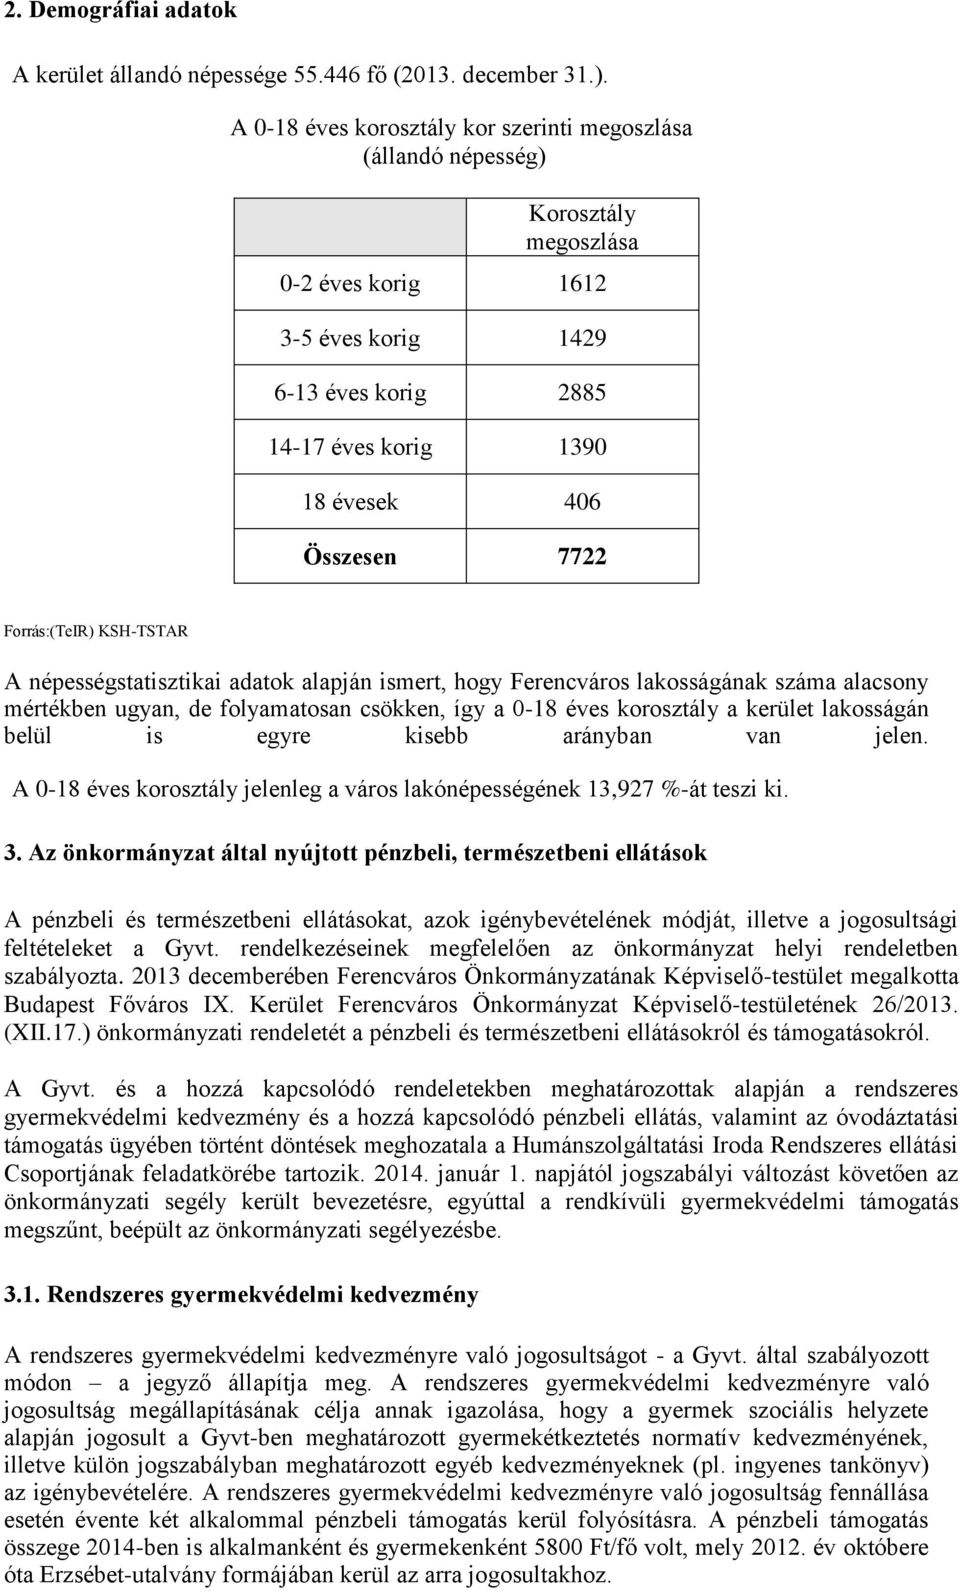 Forrás:(TeIR) KSH-TSTAR A népességstatisztikai adatok alapján ismert, hogy Ferencváros lakosságának száma alacsony mértékben ugyan, de folyamatosan csökken, így a 0-18 éves korosztály a kerület